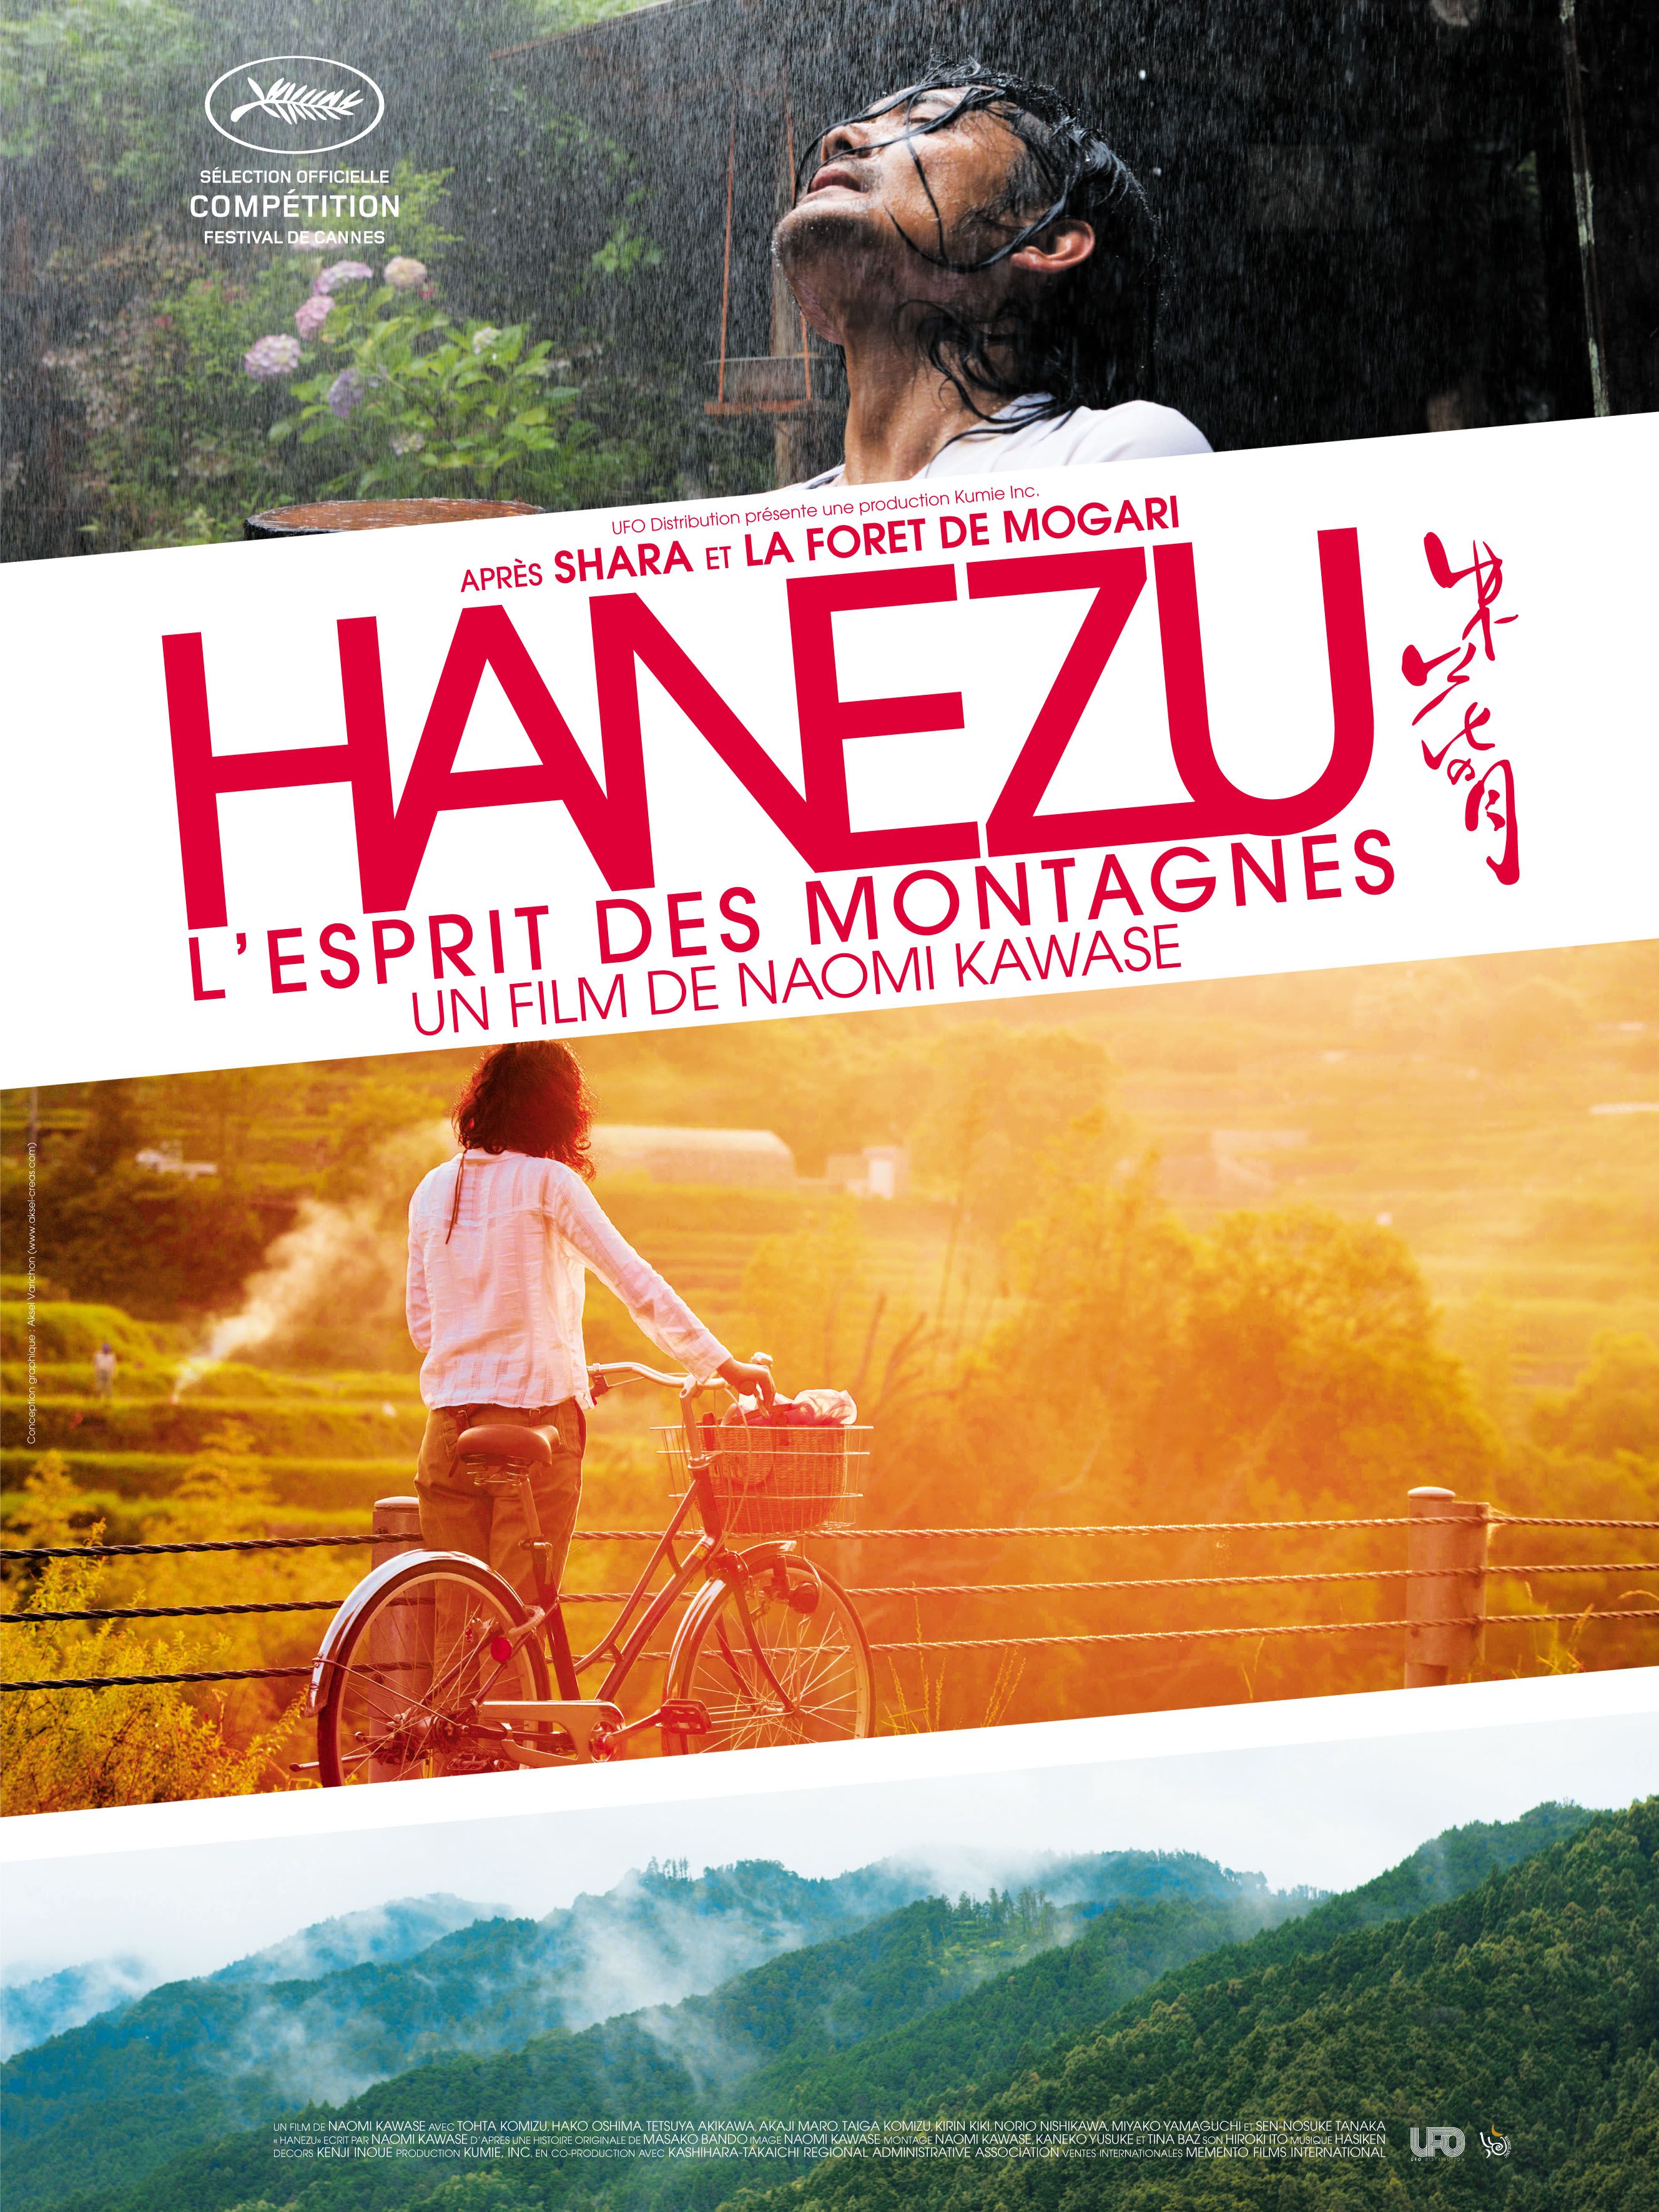 Hanezu, l'esprit des montagnes - Film (2011) streaming VF gratuit complet